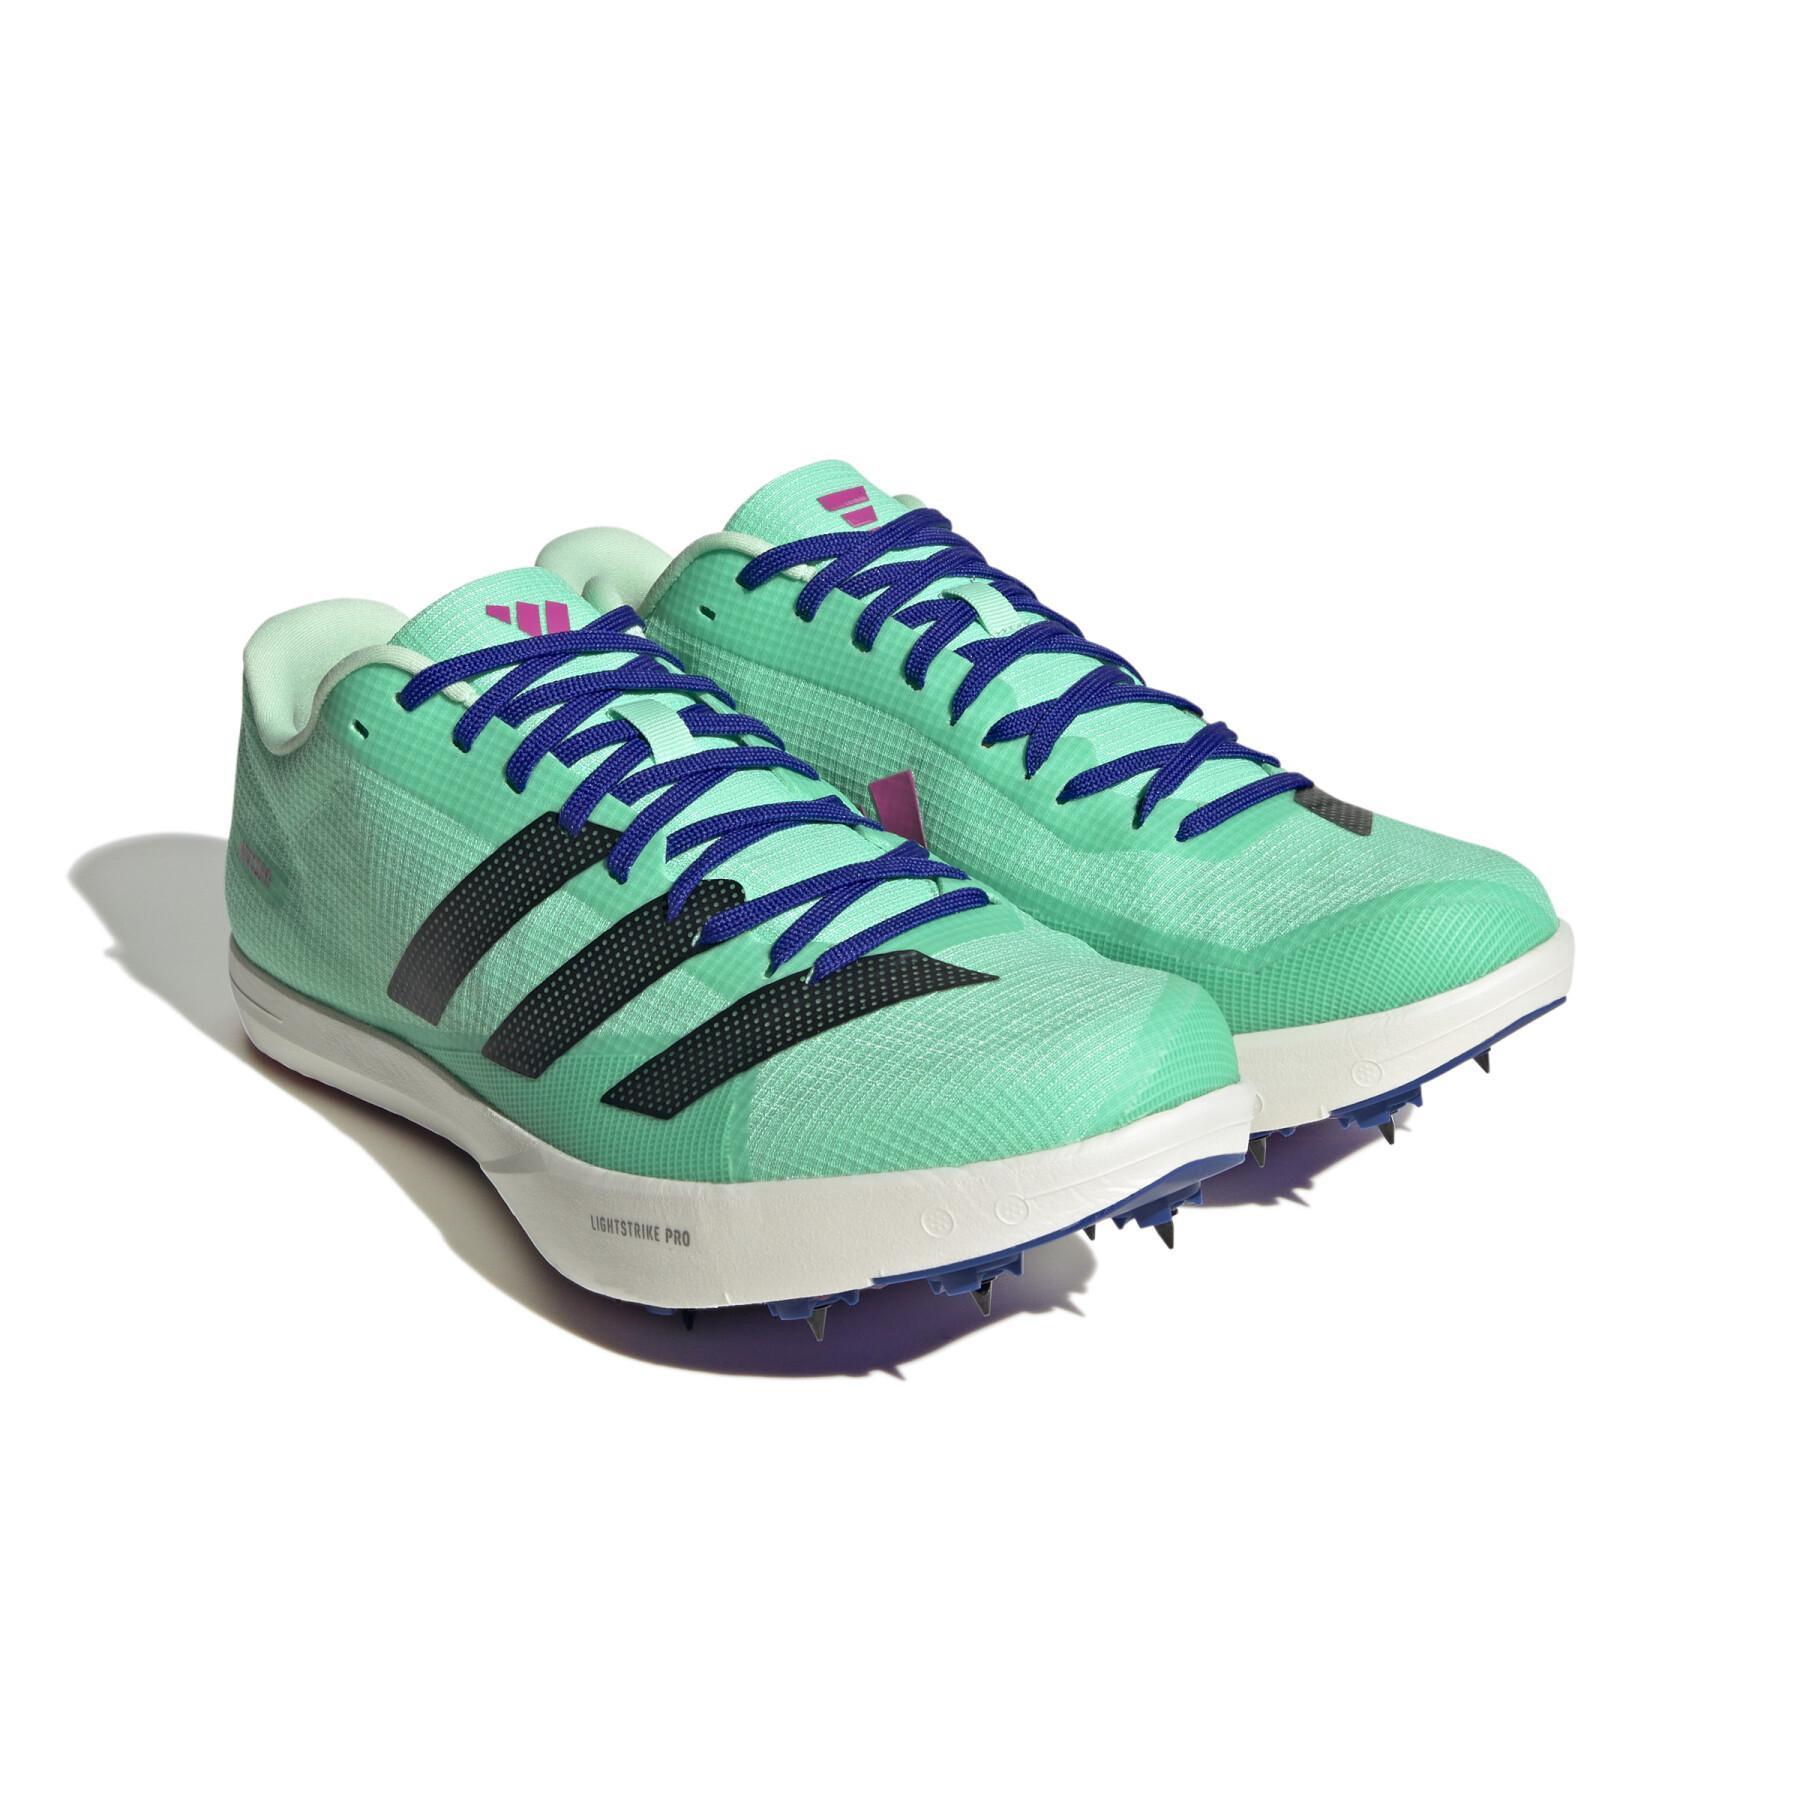 Chaussures d'athlétisme de saut en longueur adidas Adizero